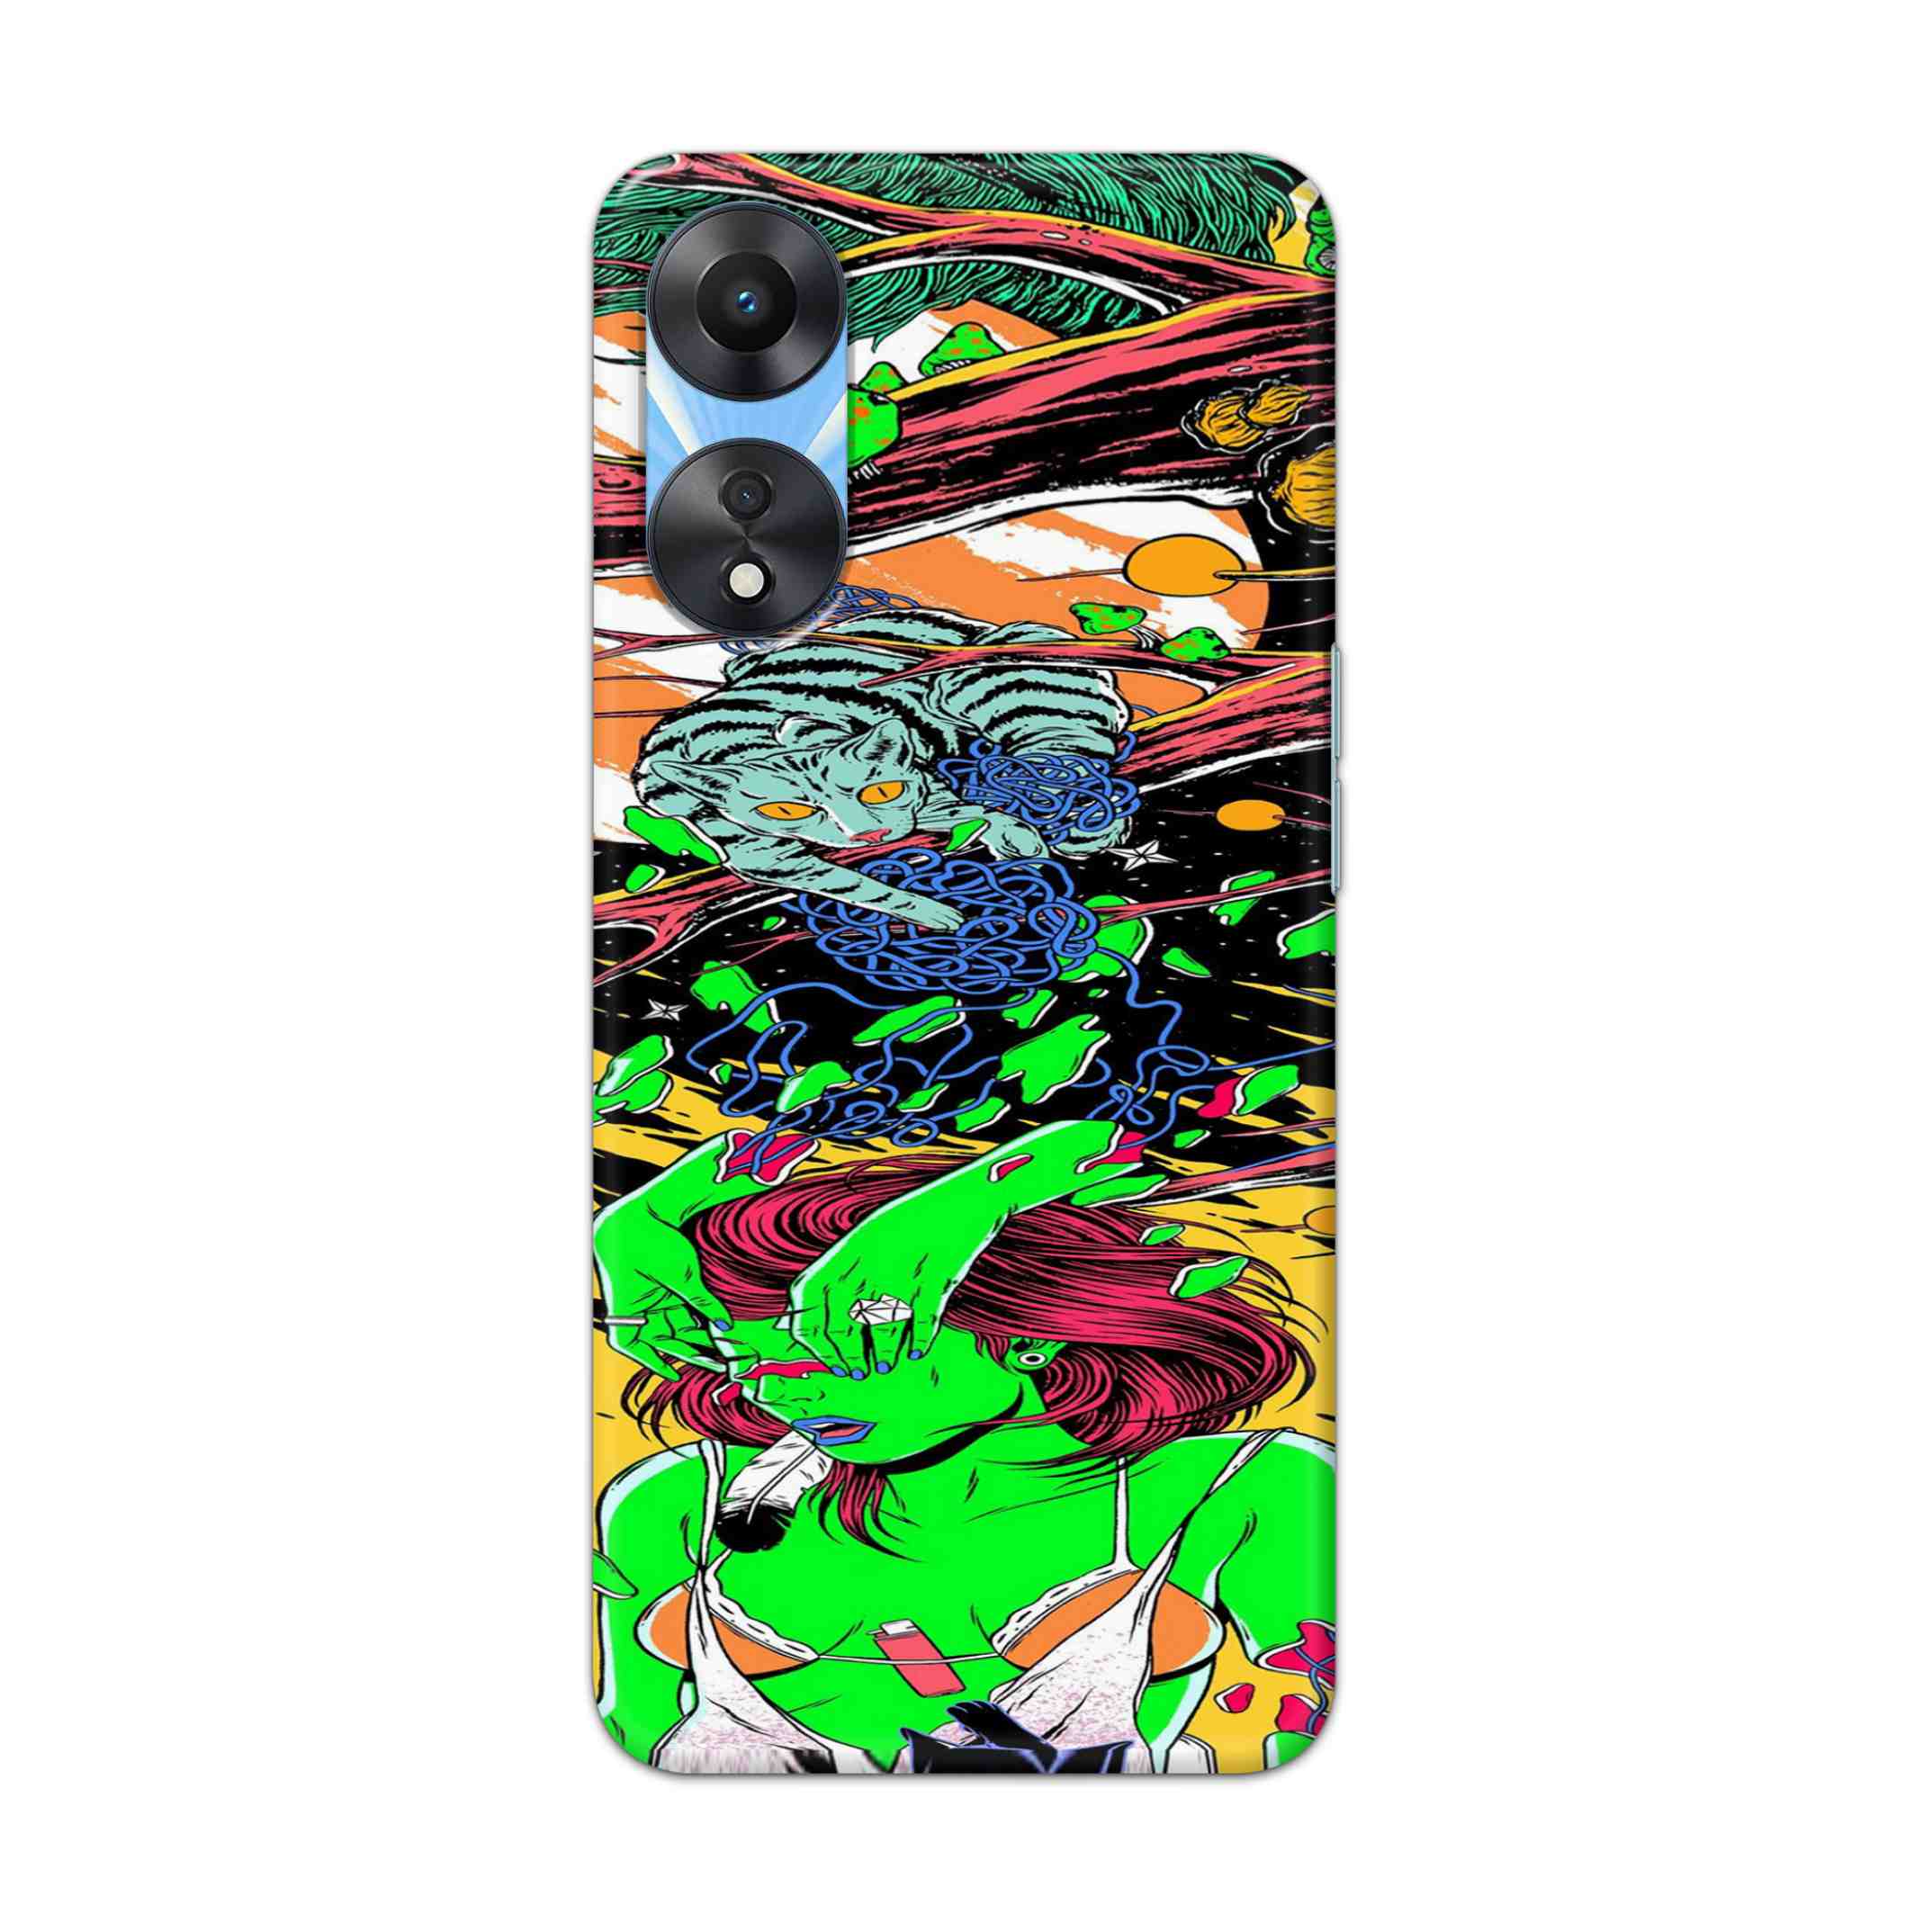 Buy Green Girl Art Hard Back Mobile Phone Case Cover For OPPO A78 Online